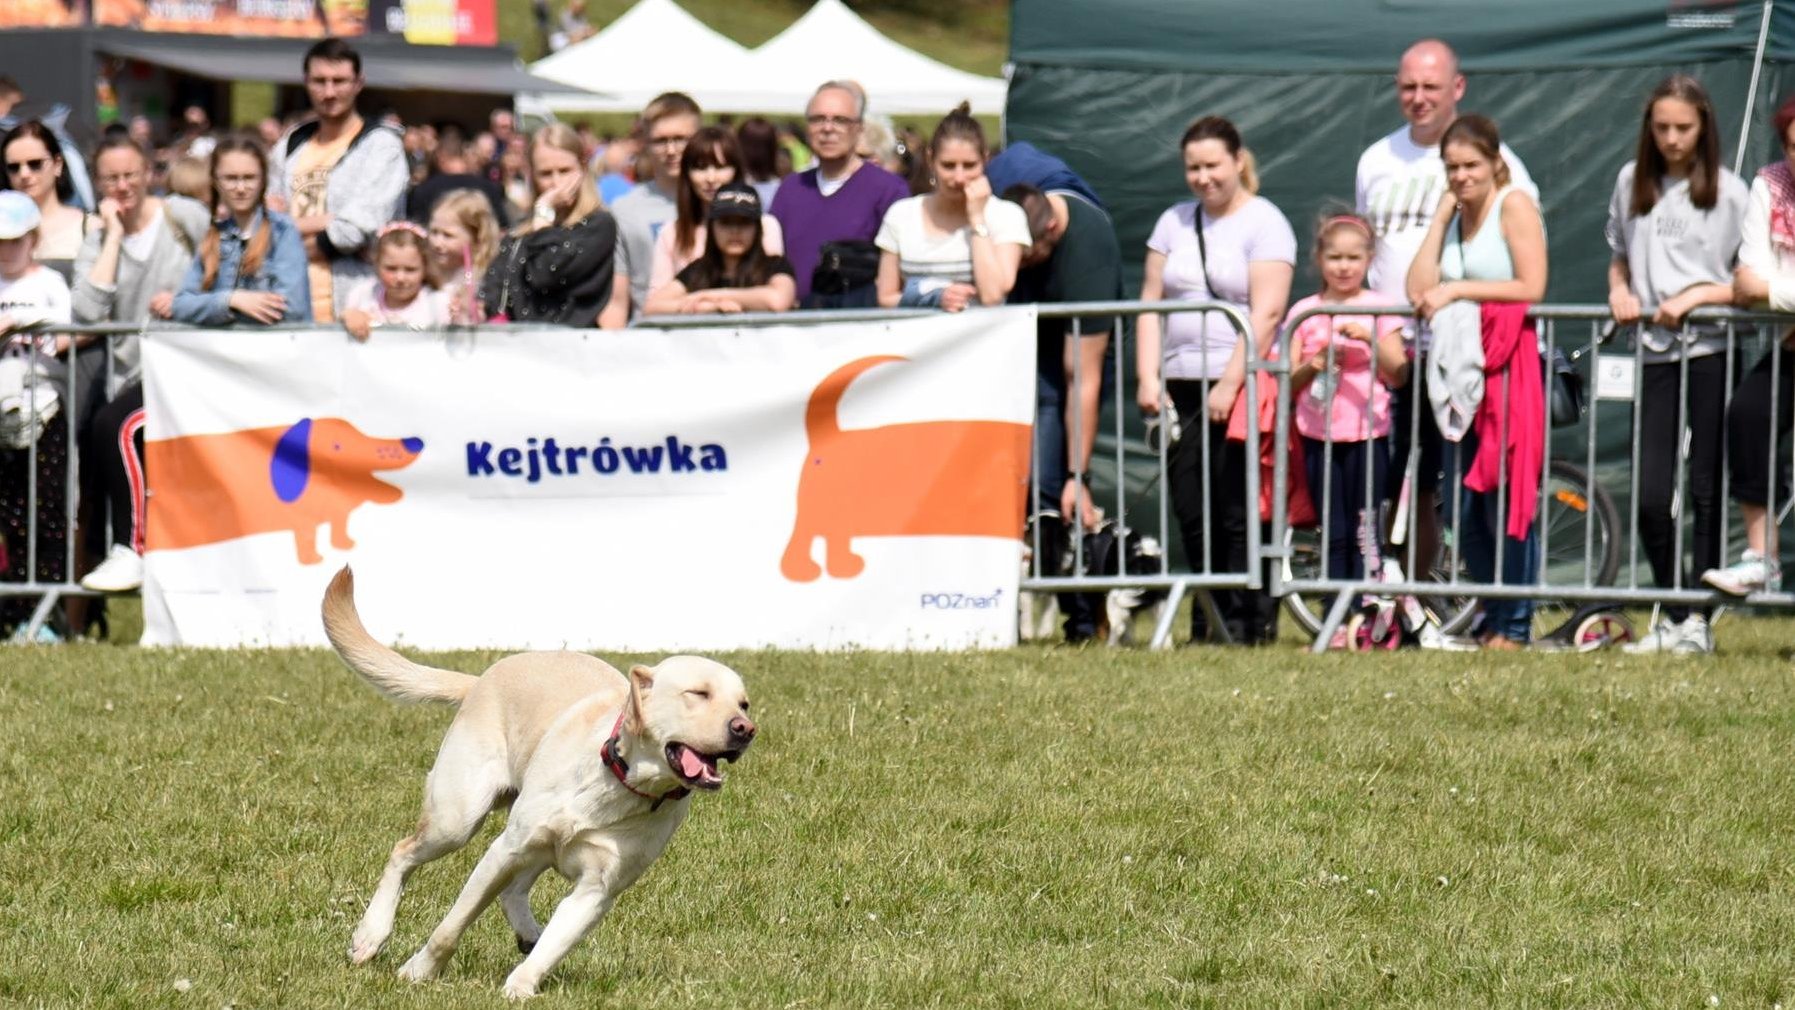 Zdjęcie przedstawia biegnącego psa. W tle, za barierką stoją ludzie. Na barierce wisi plakat z napisem "Kejtrówka" i obrazkiem psa.